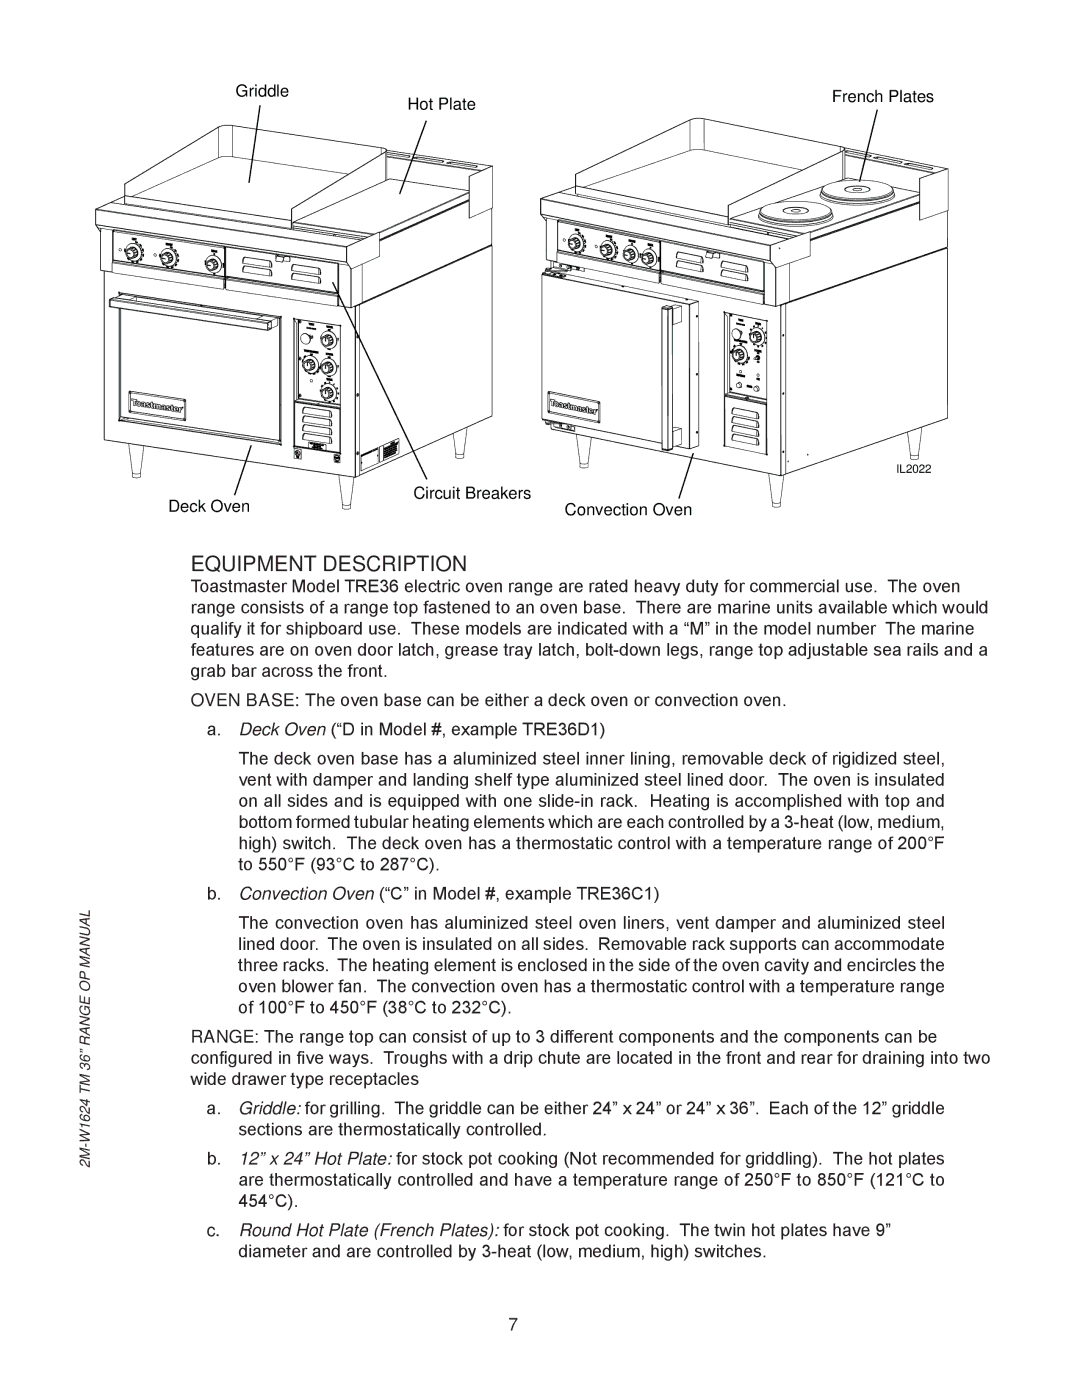 Toastmaster TRE36C, TRE36D manual Equipment Description 